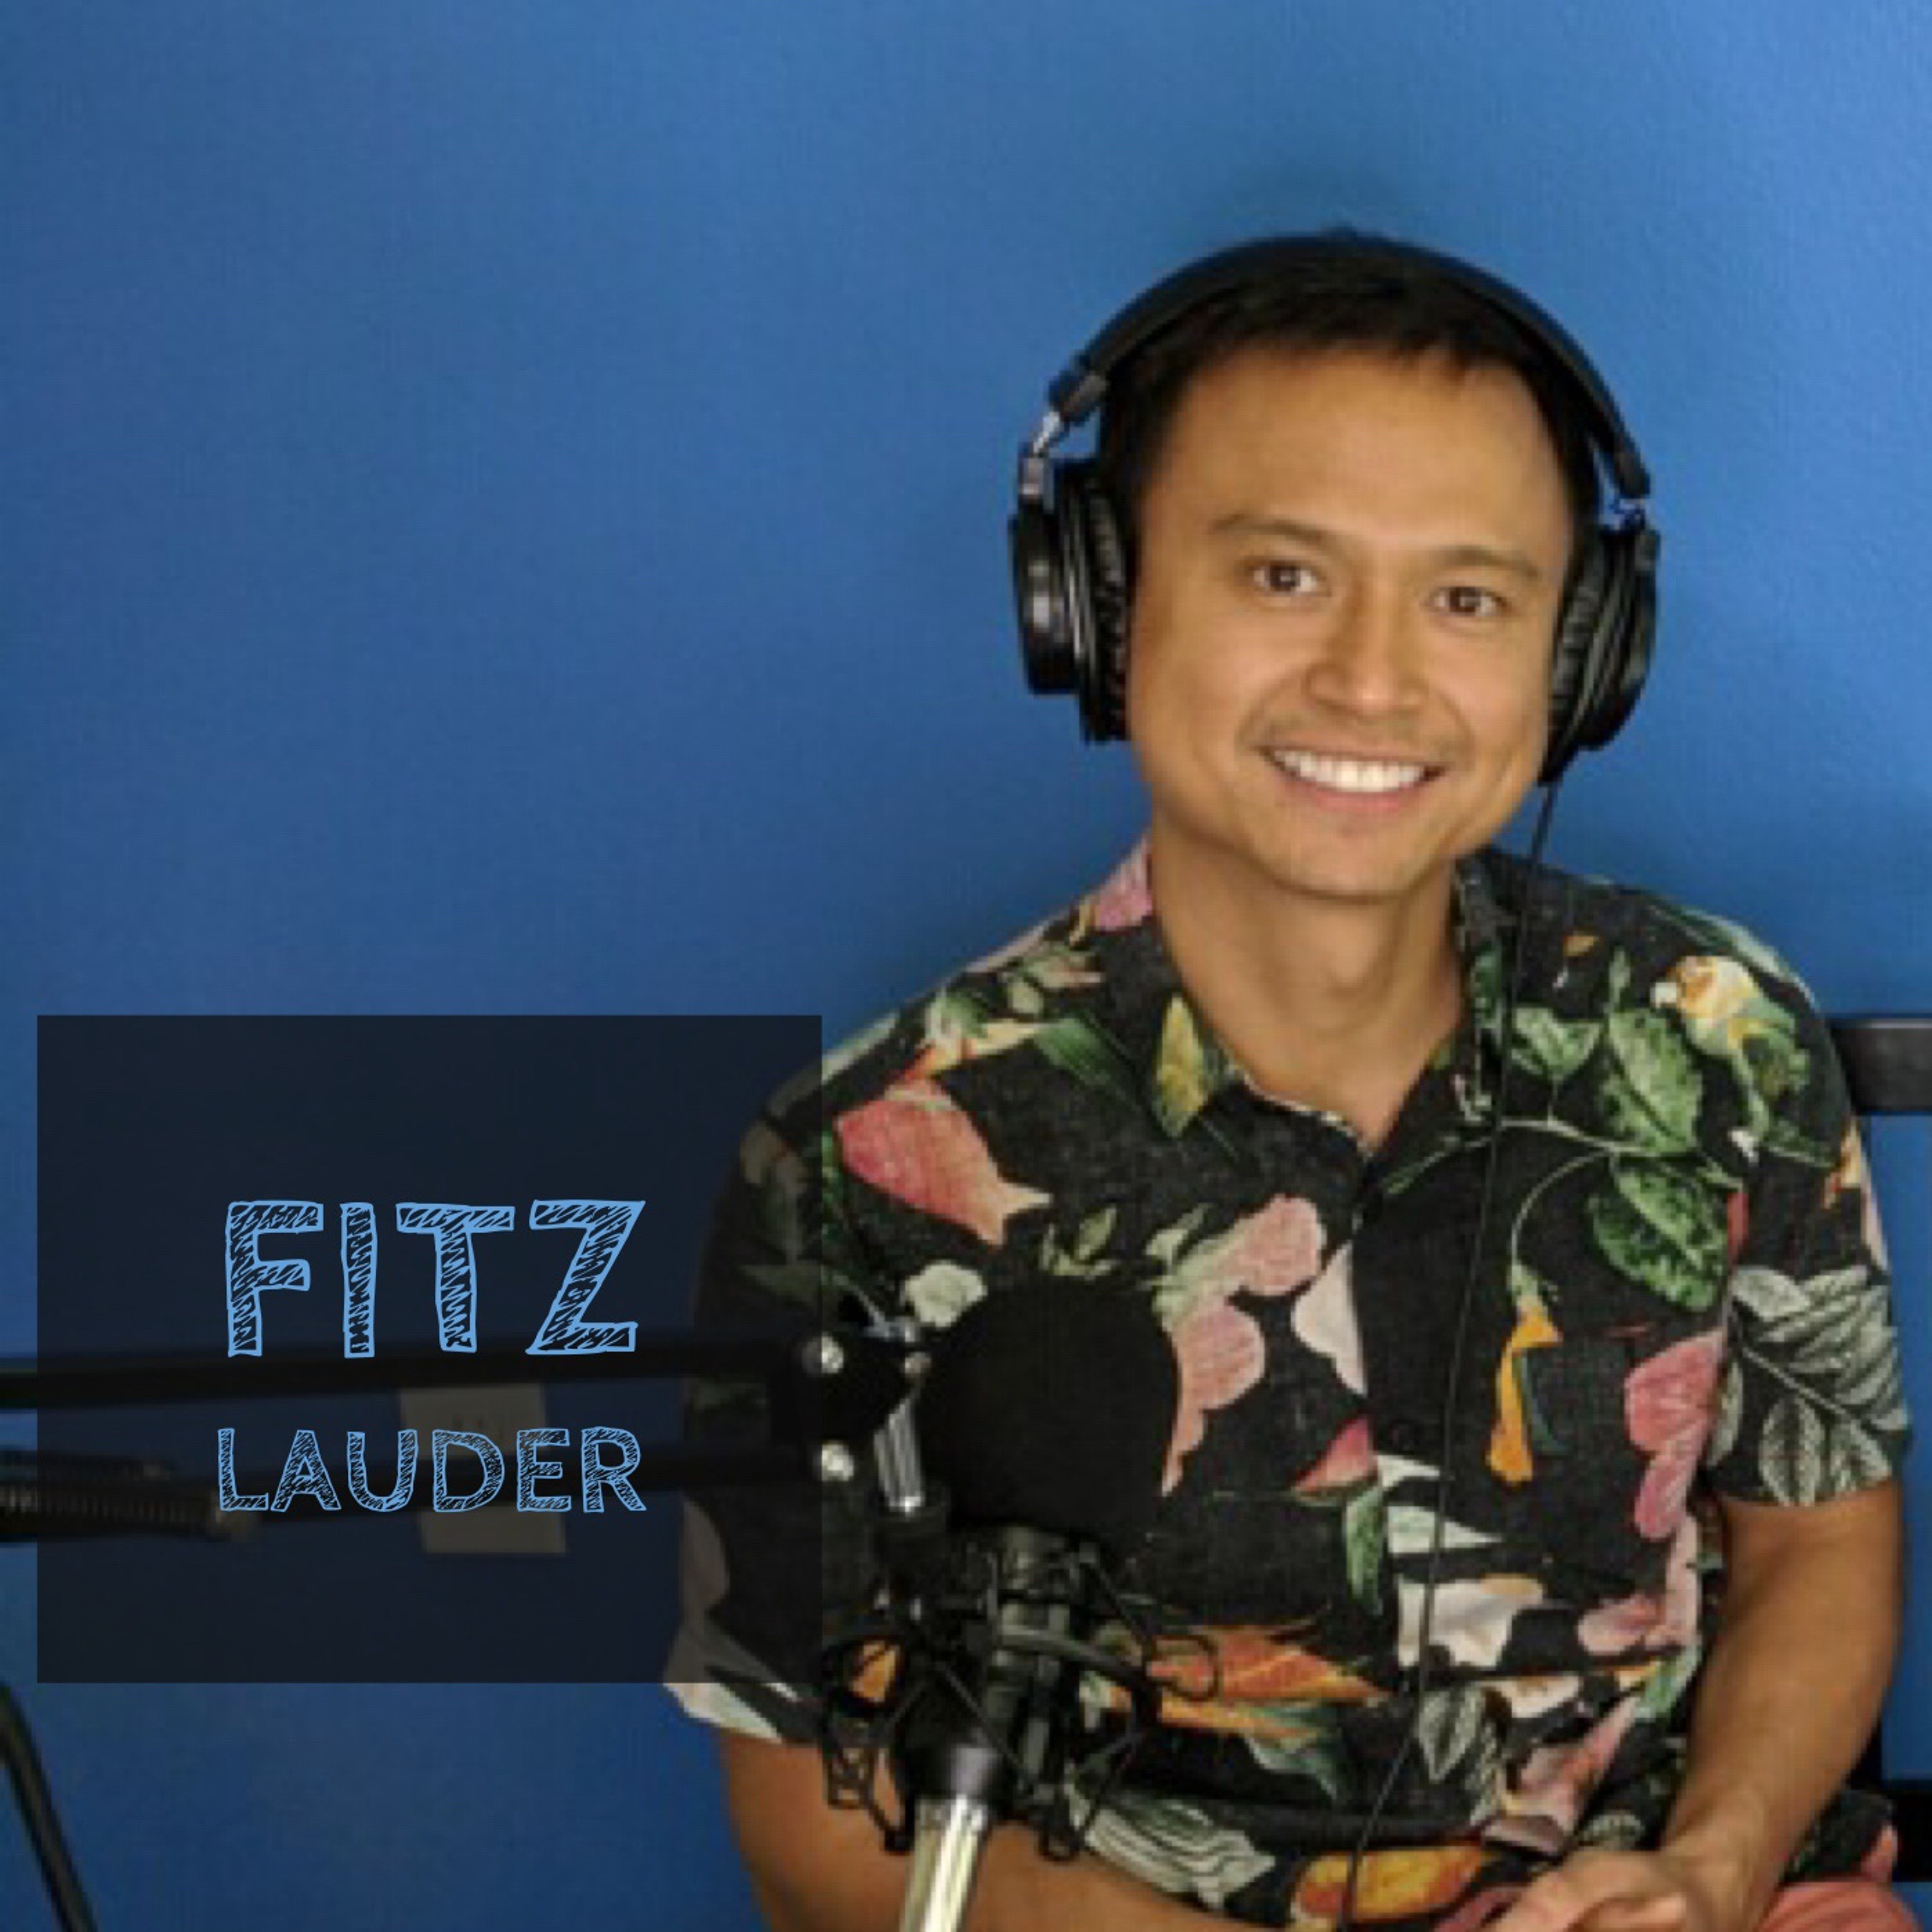 3: The Vegan DJ - Fitz Lauder Image